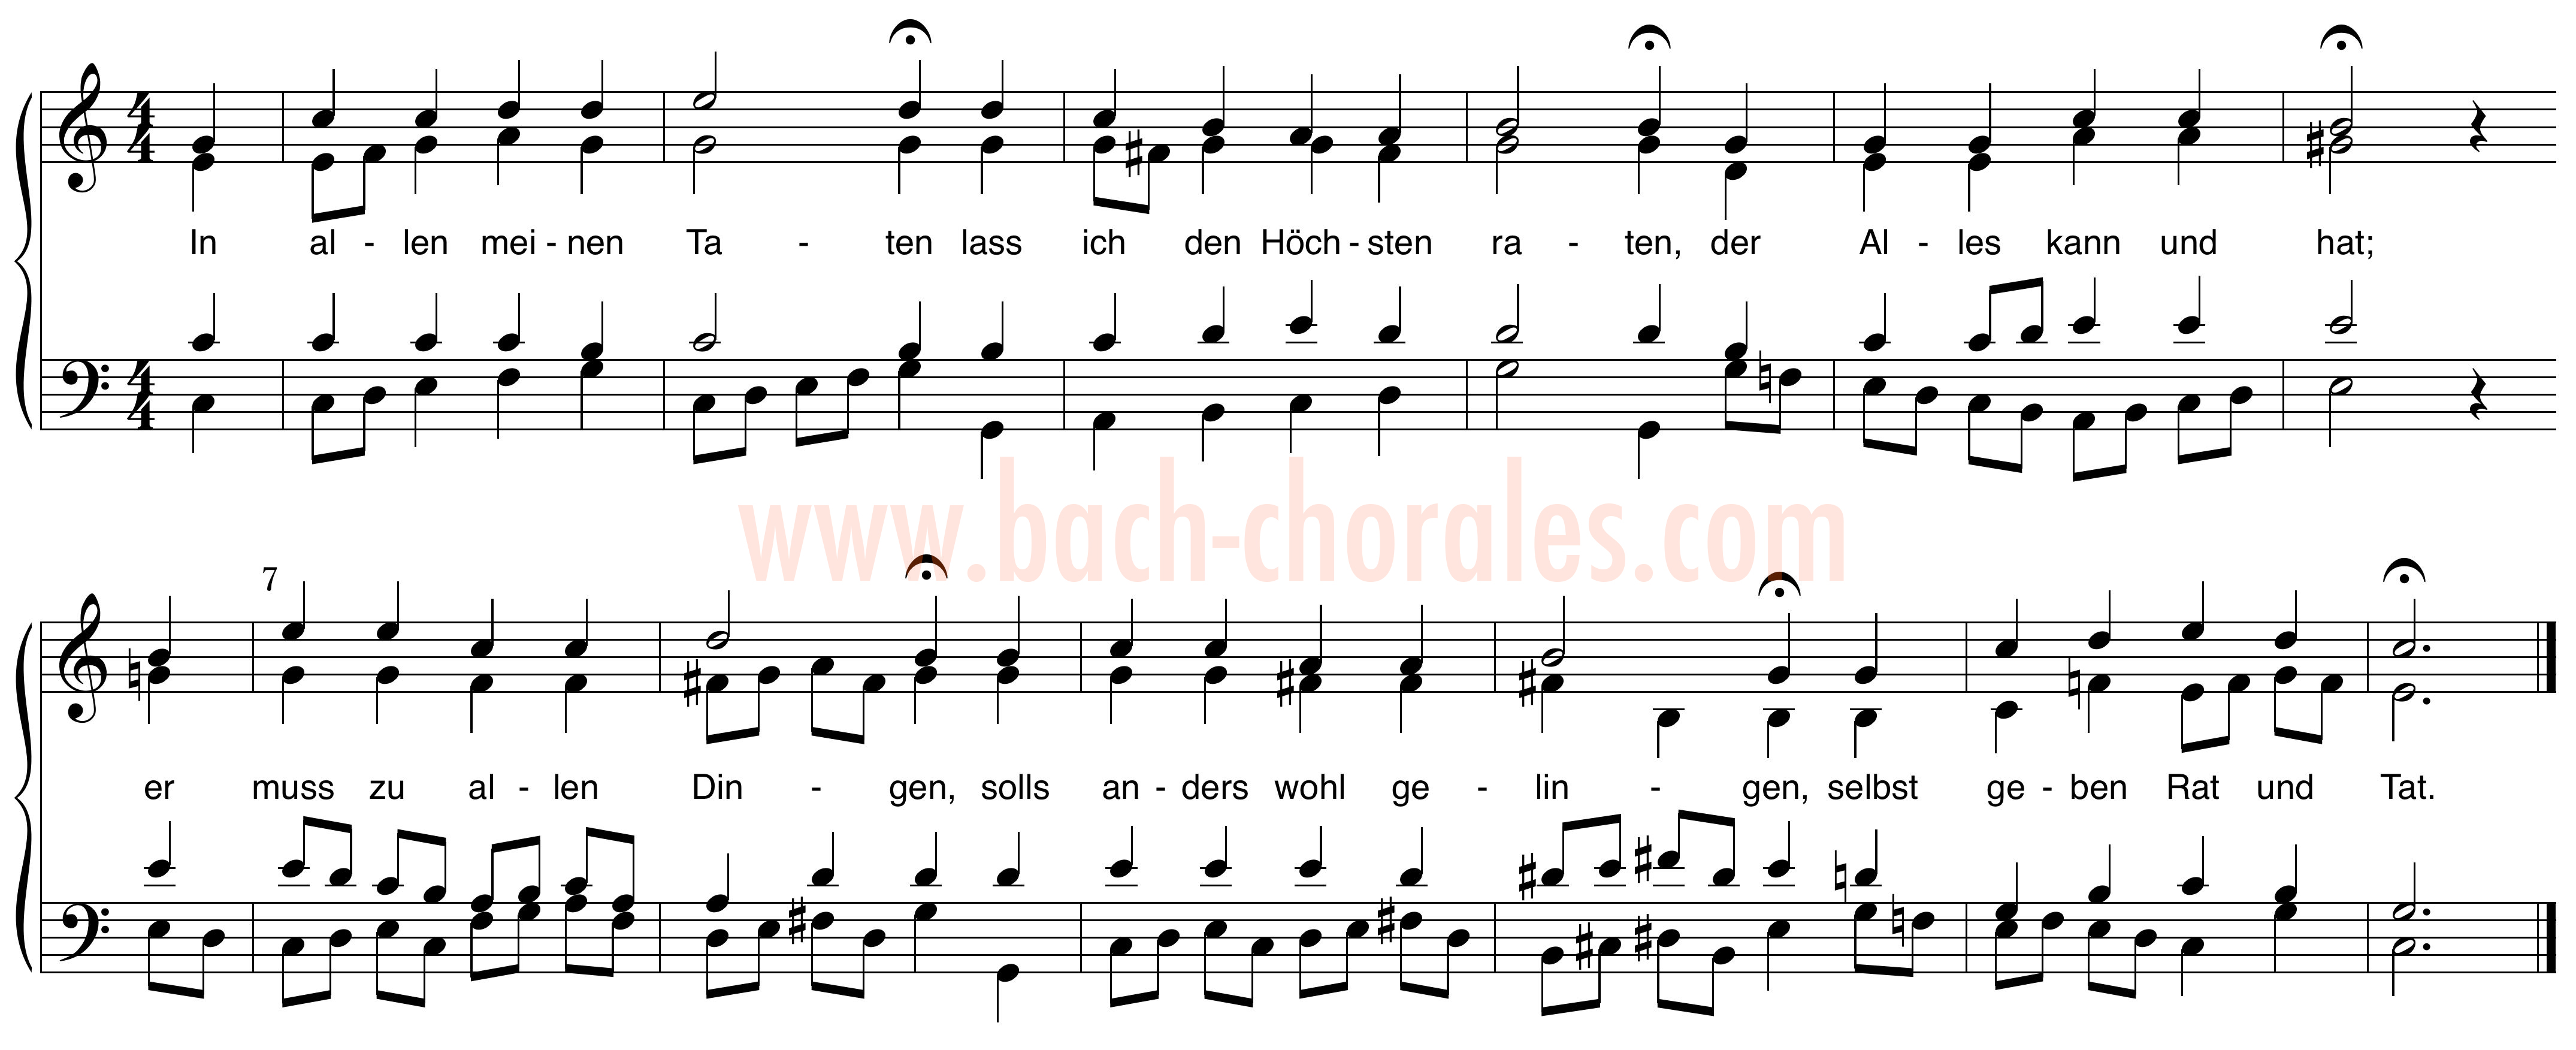 notenbeeld BWV 367 op https://www.bach-chorales.com/